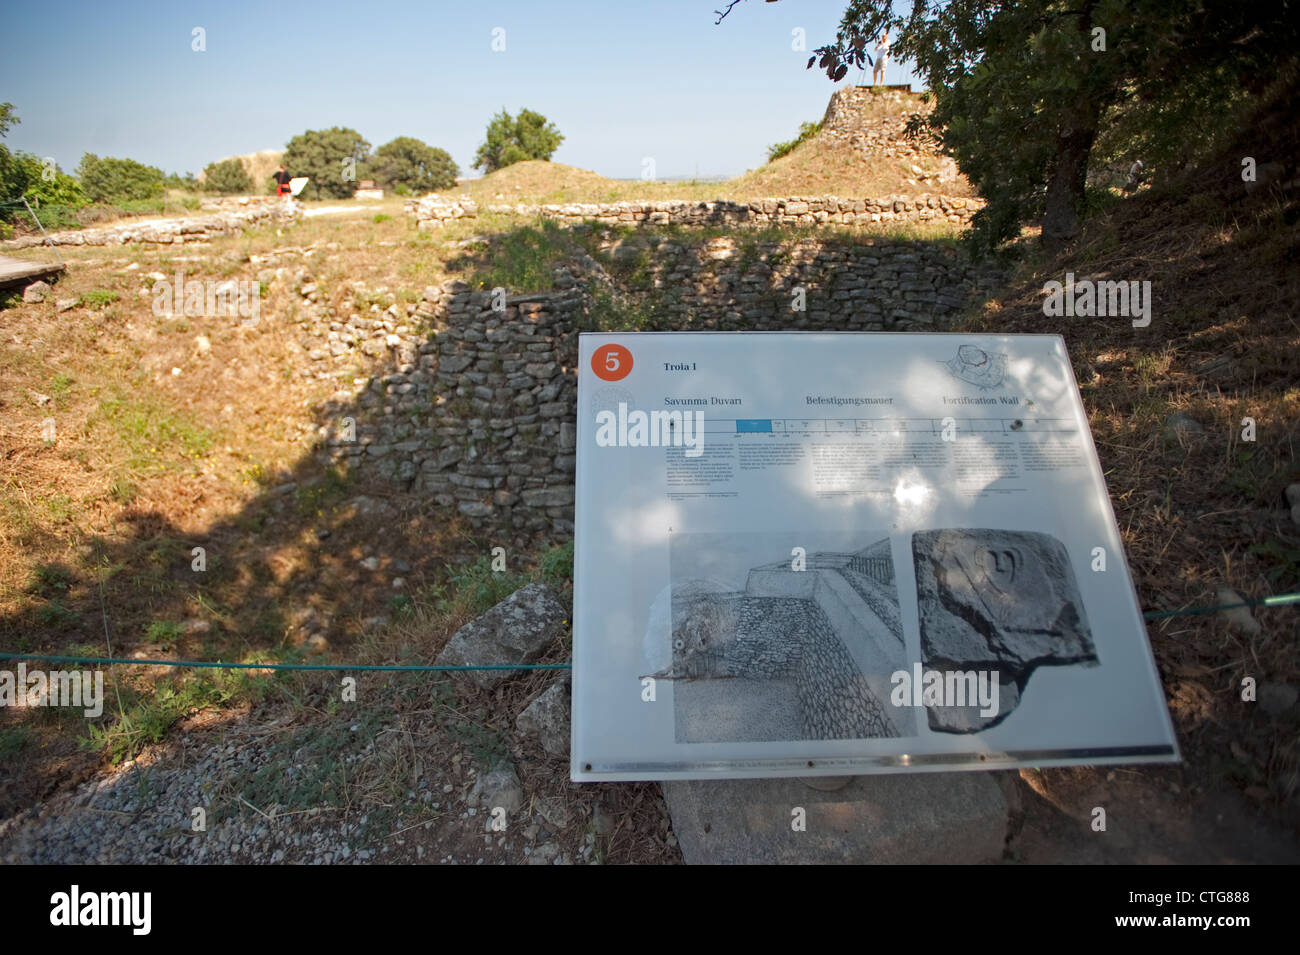 Mur de fortification Troia J BC 3000 Troie Çanakkale Turquie Banque D'Images